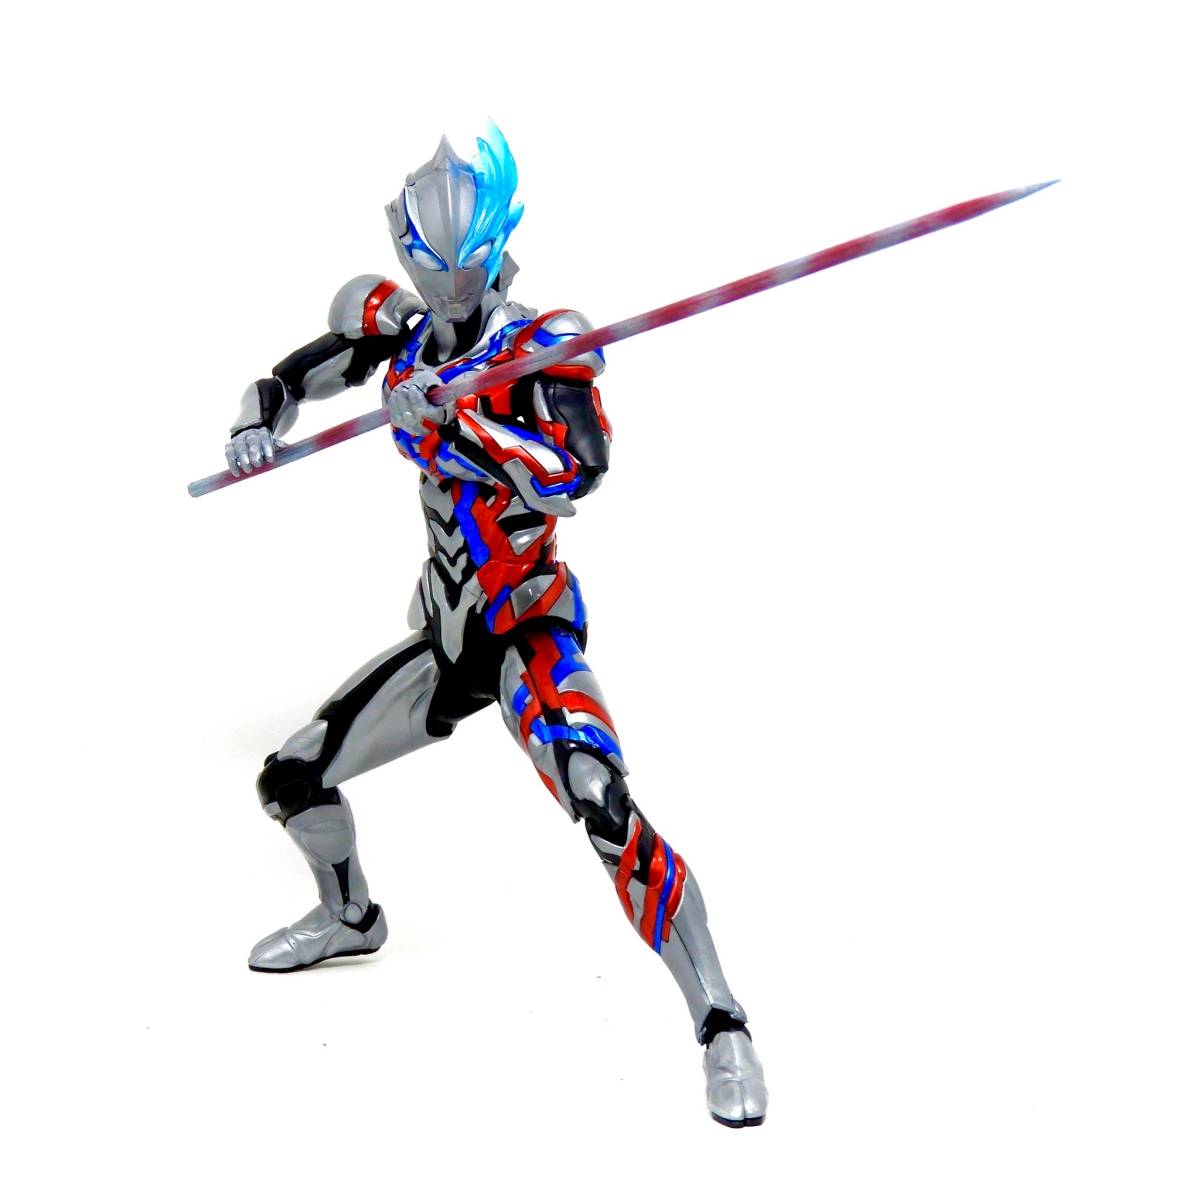  полное окрашивание сборный товар Figure-rise Standard Ultraman Blazer 2